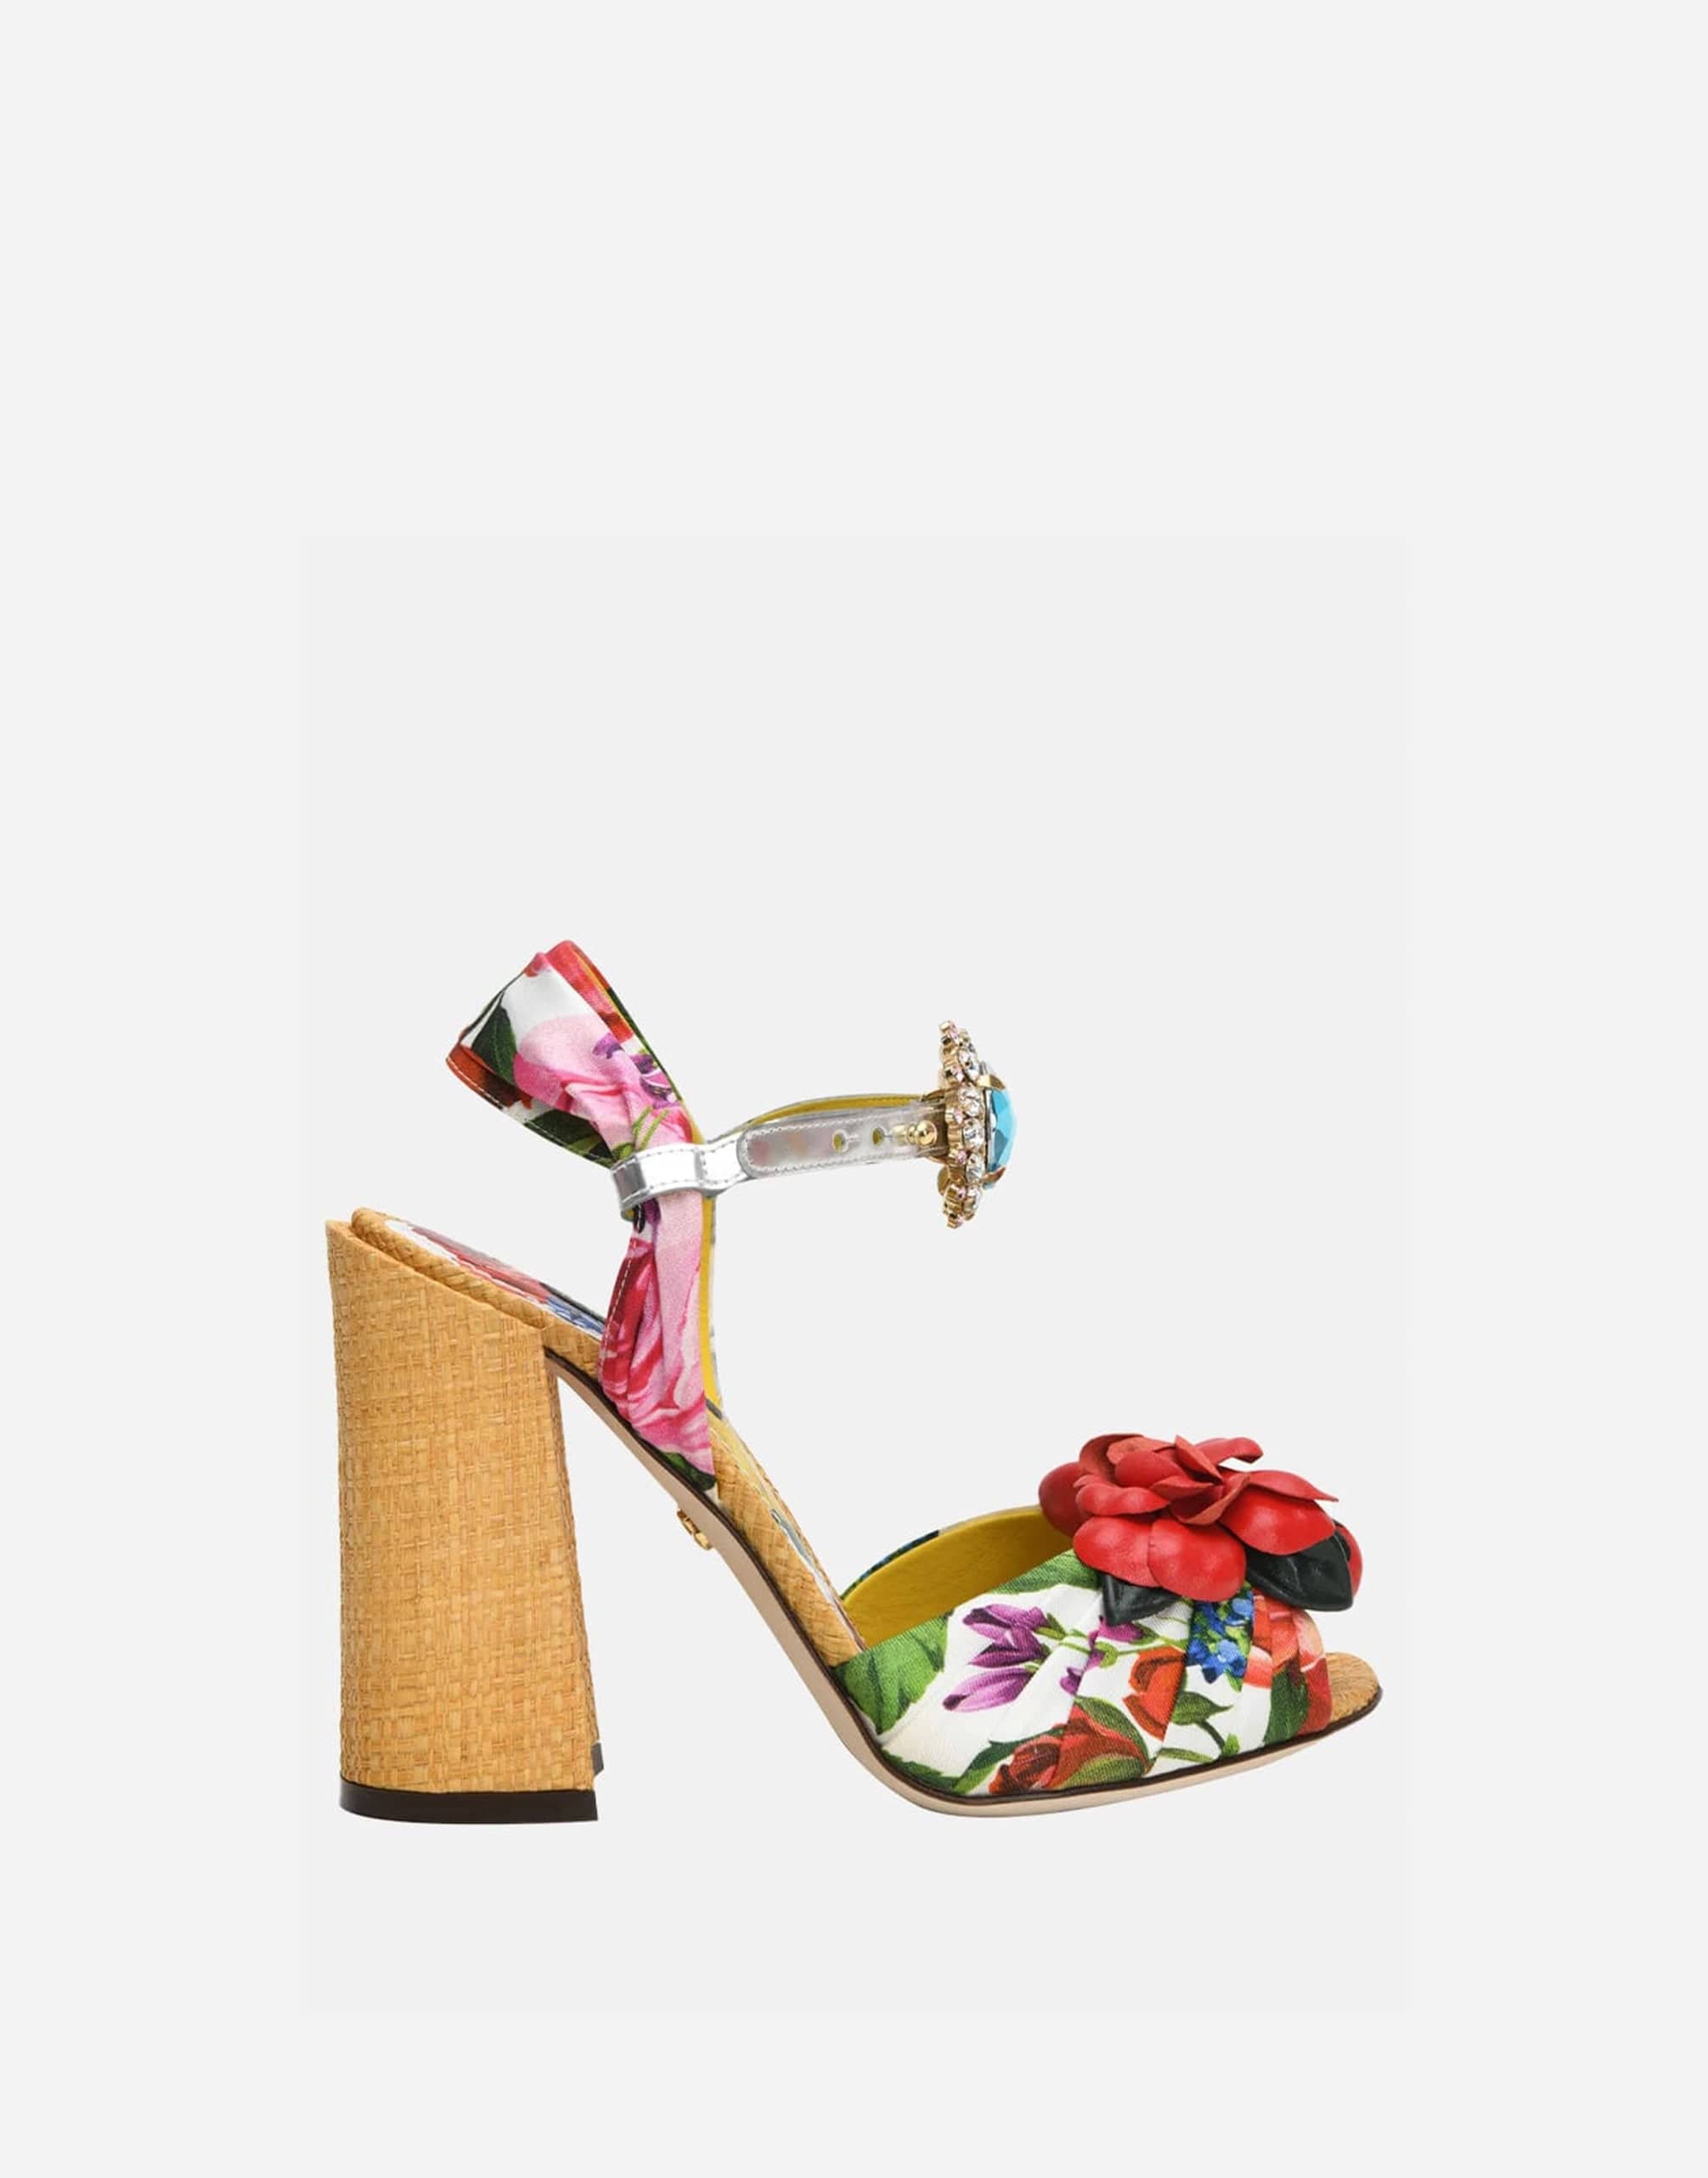 Dolce & Gabbana Floral Applique Crystal Embellished Sandals